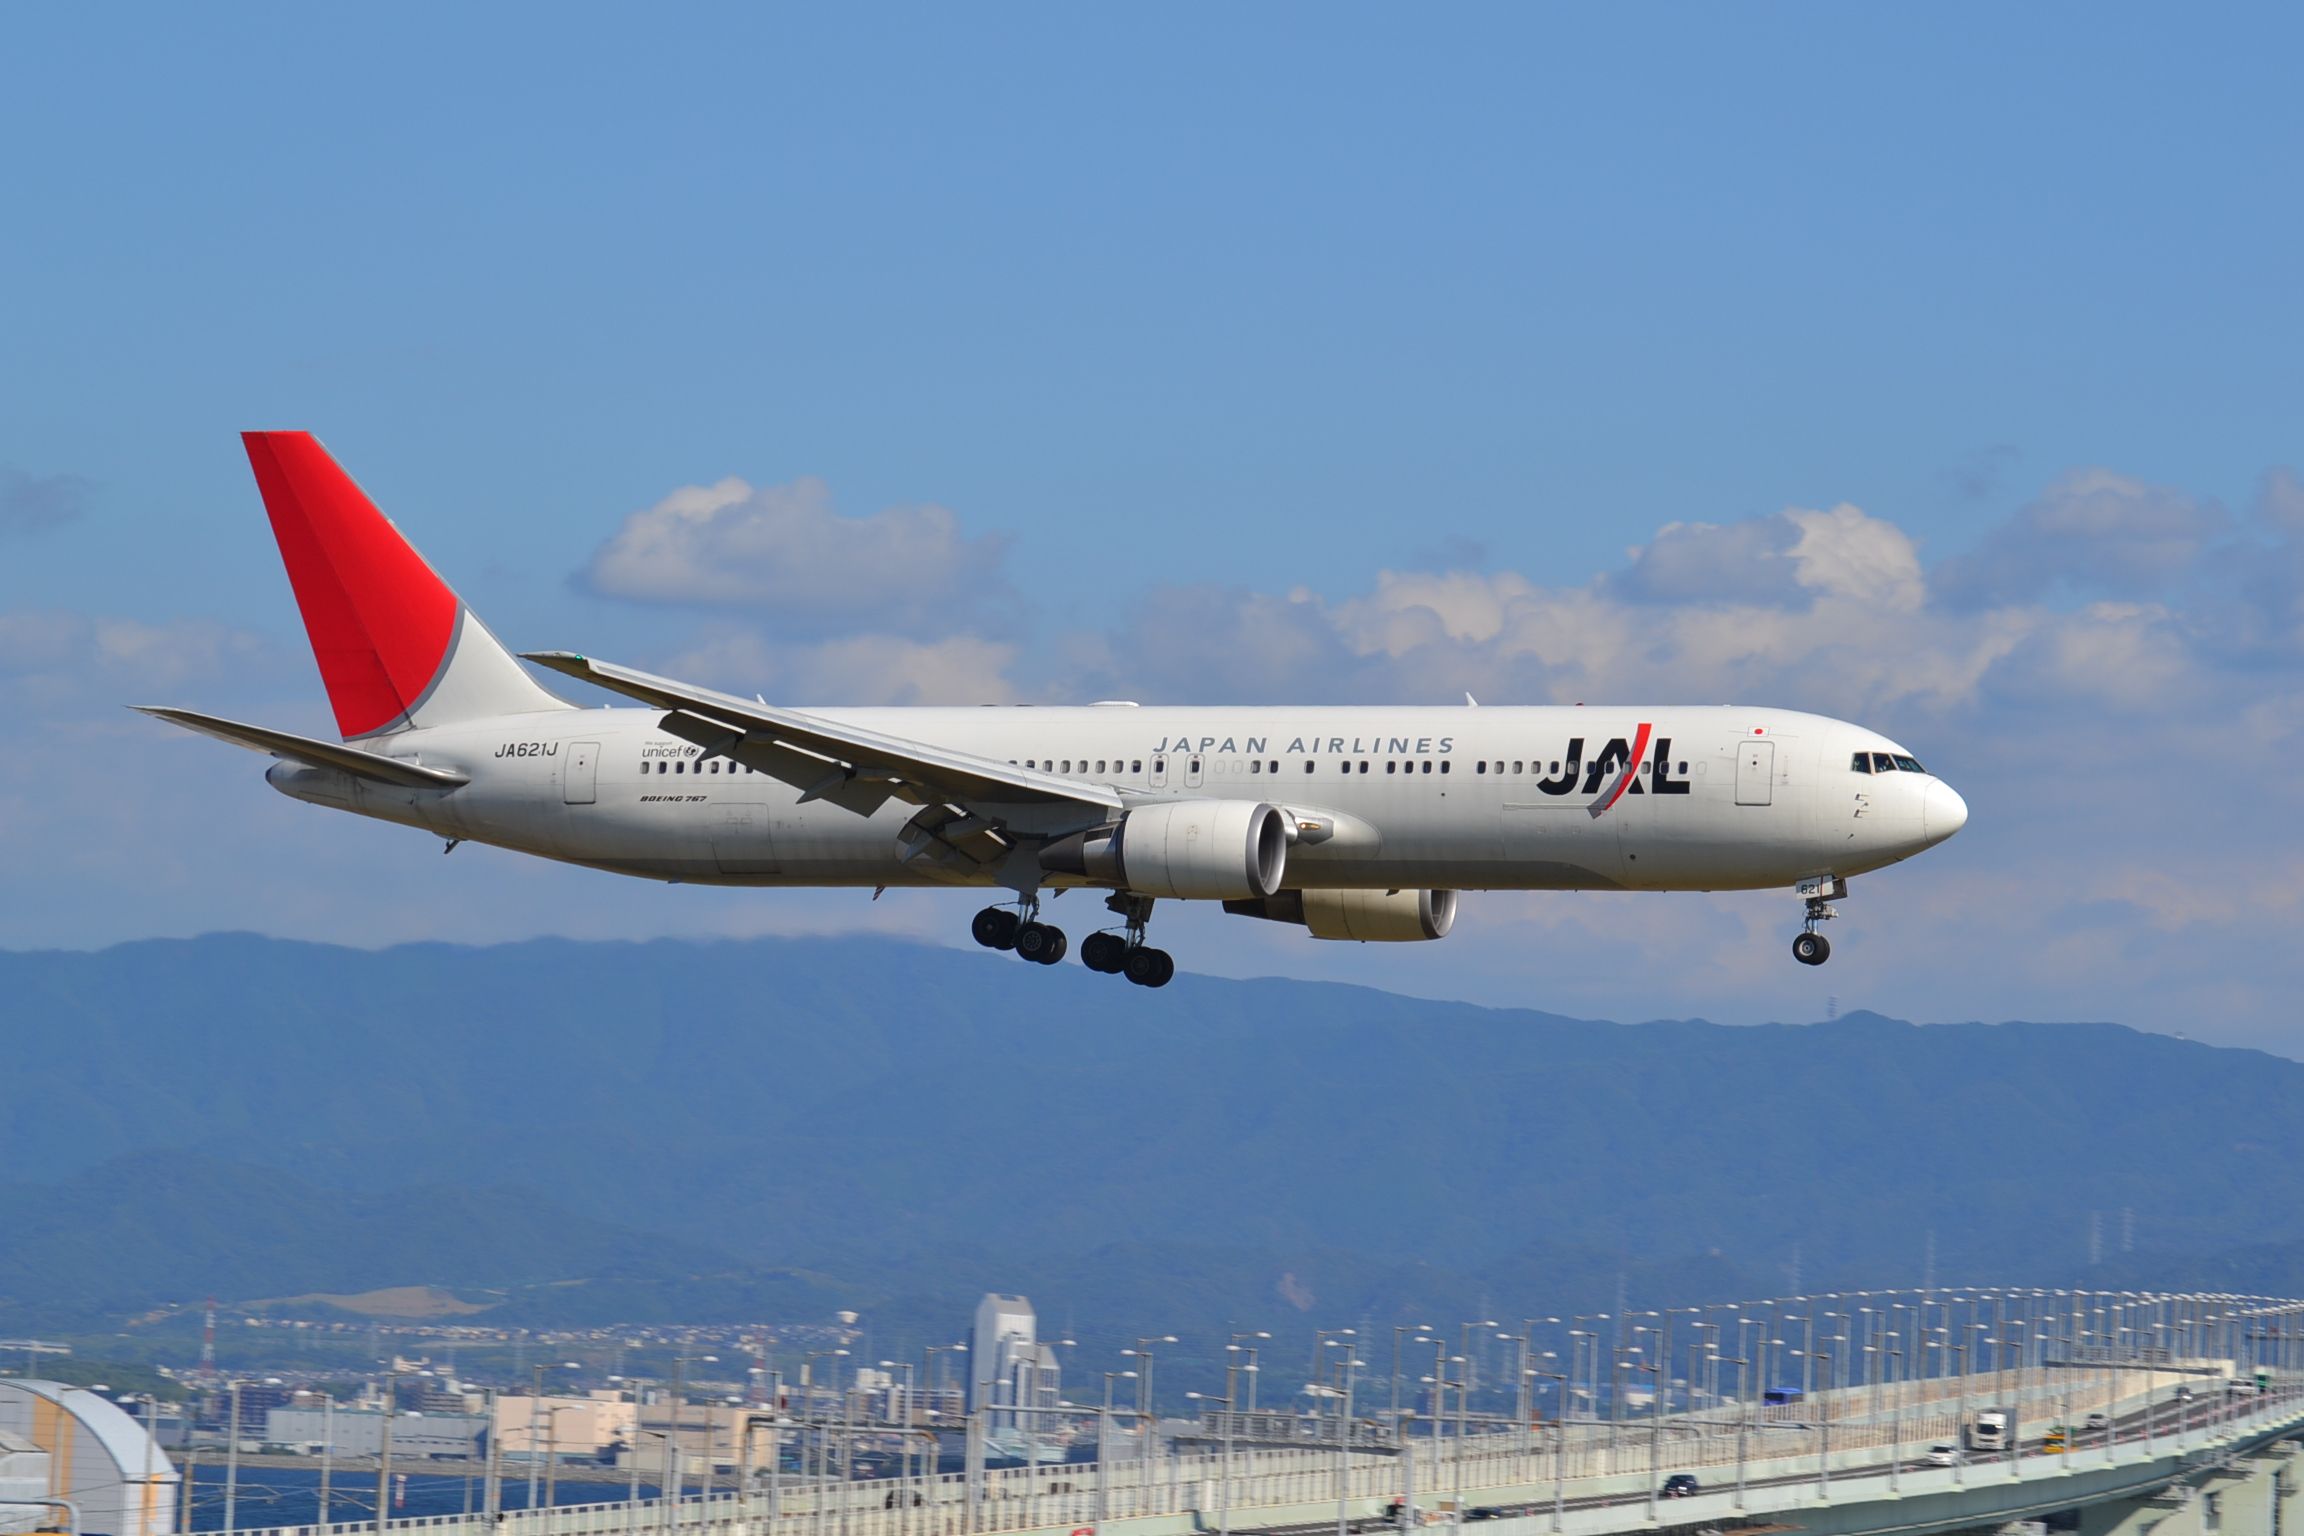 Japan Airlines Boeing 767-300ER